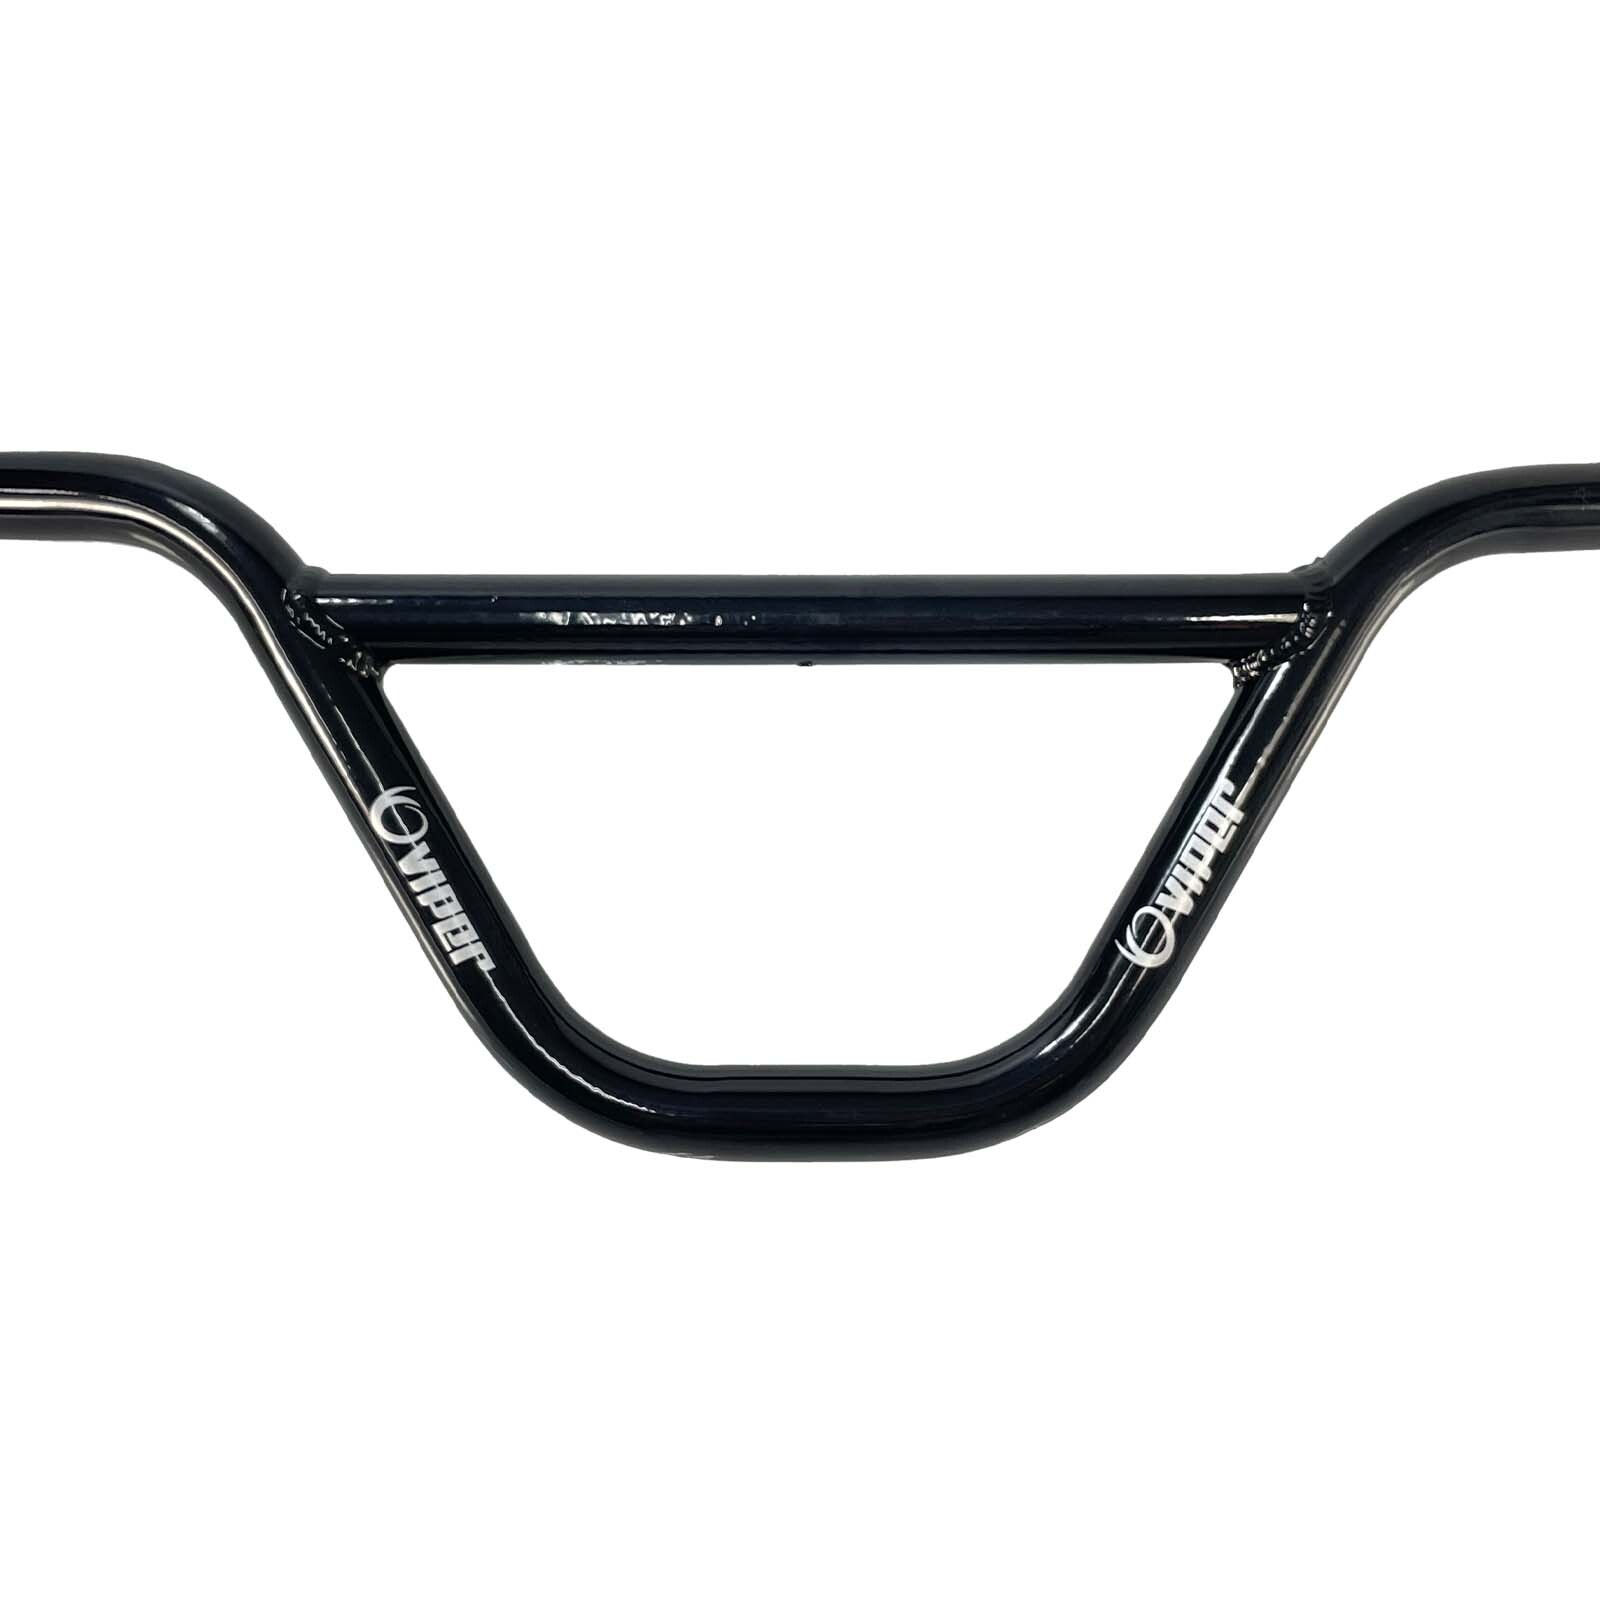 Guidão Viper Prey é um componente essencial para bicicletas, projetado para oferecer controle preciso, conforto ergonômico e durabilidade robusta